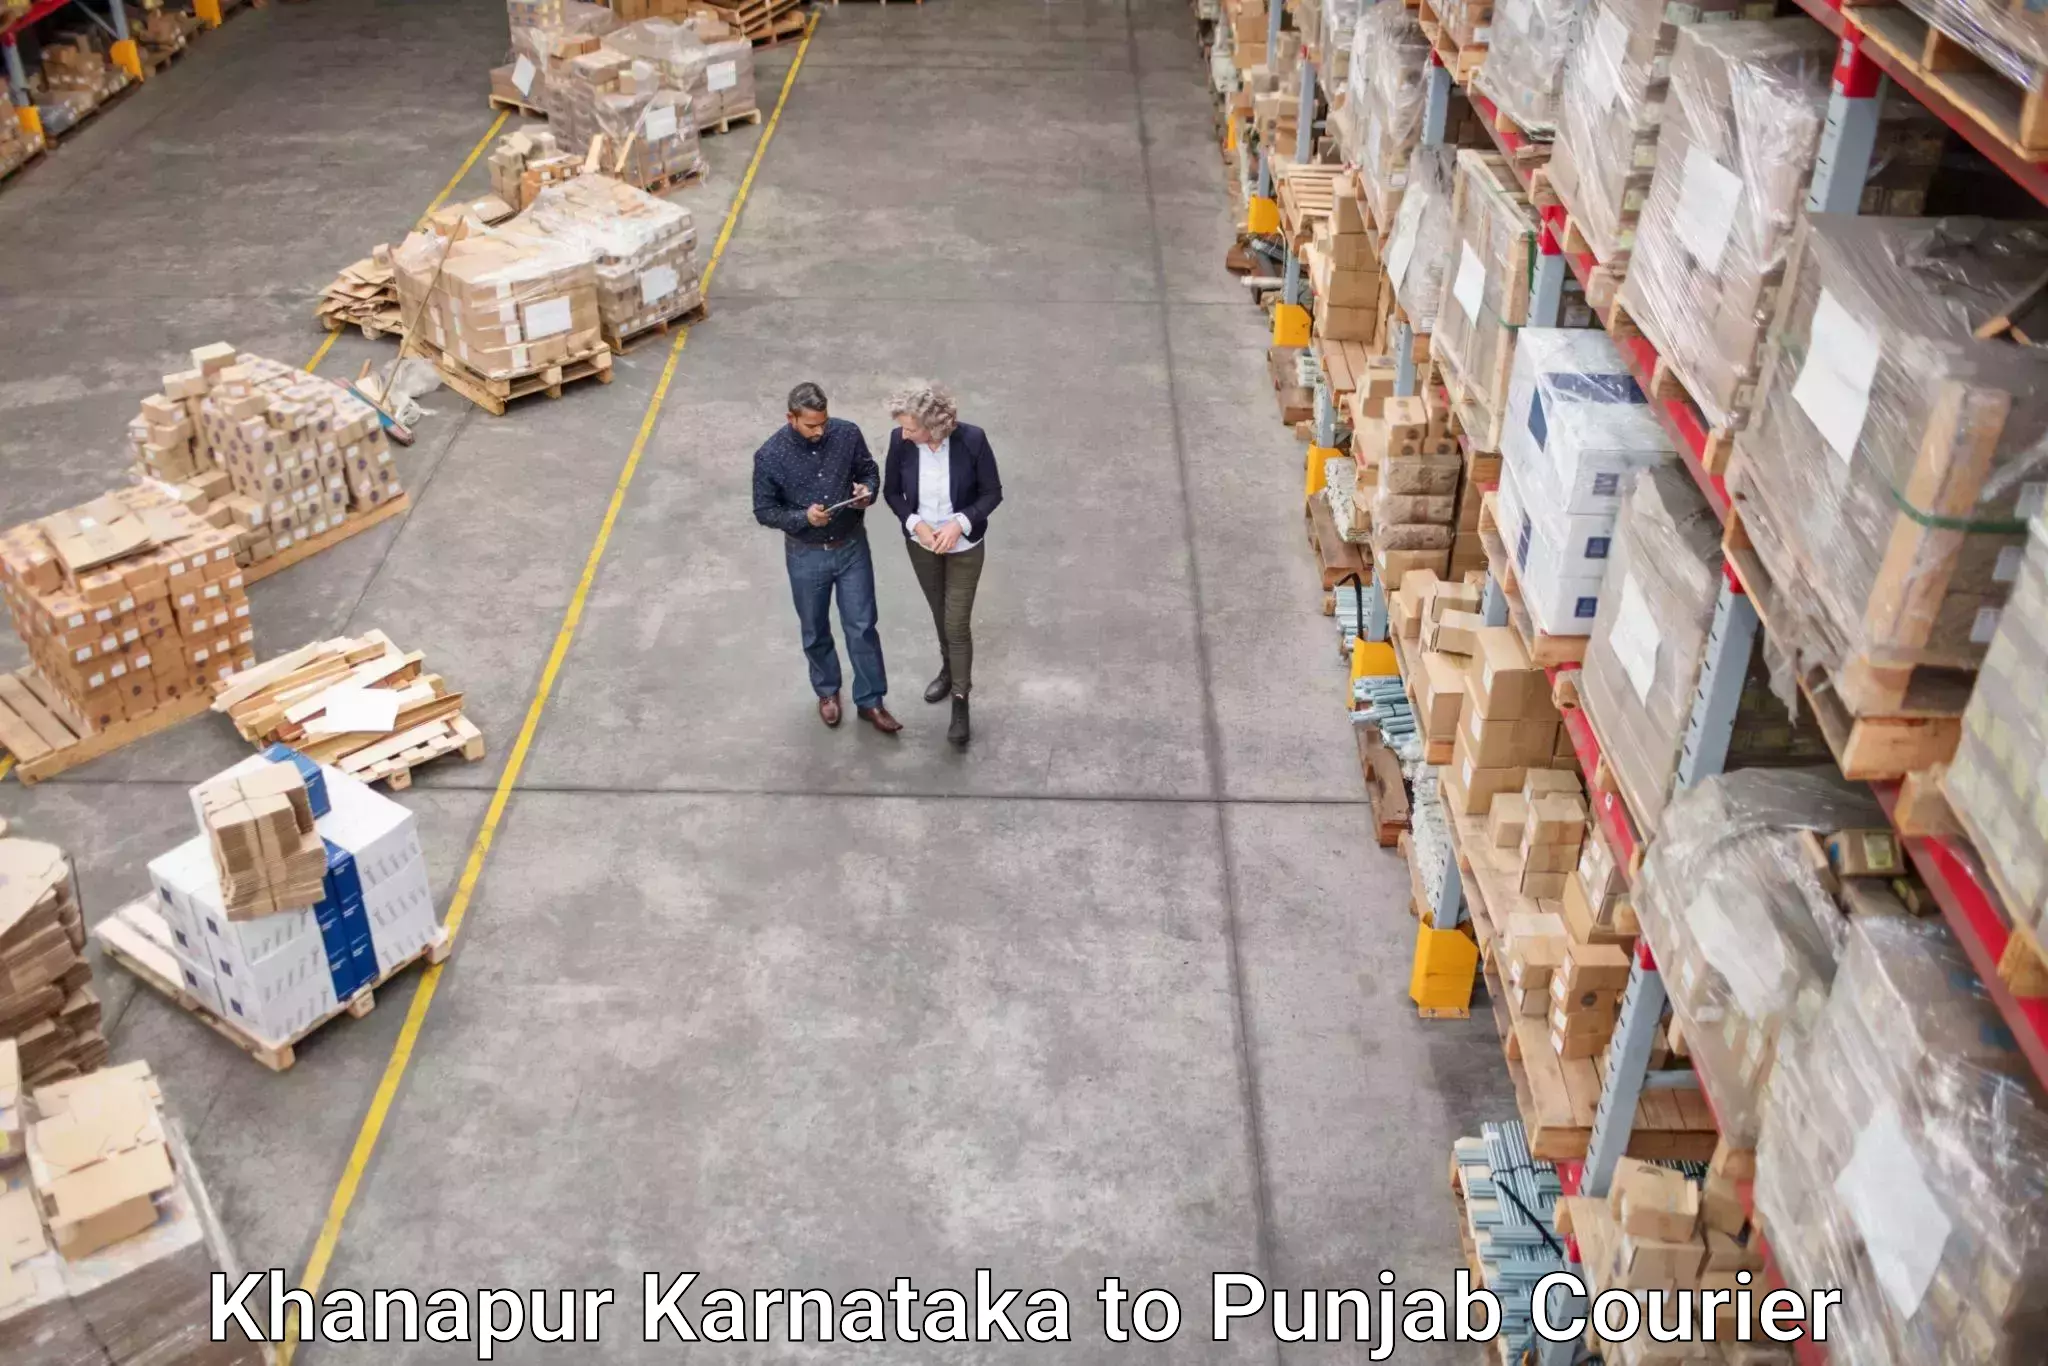 Efficient parcel service Khanapur Karnataka to Beas